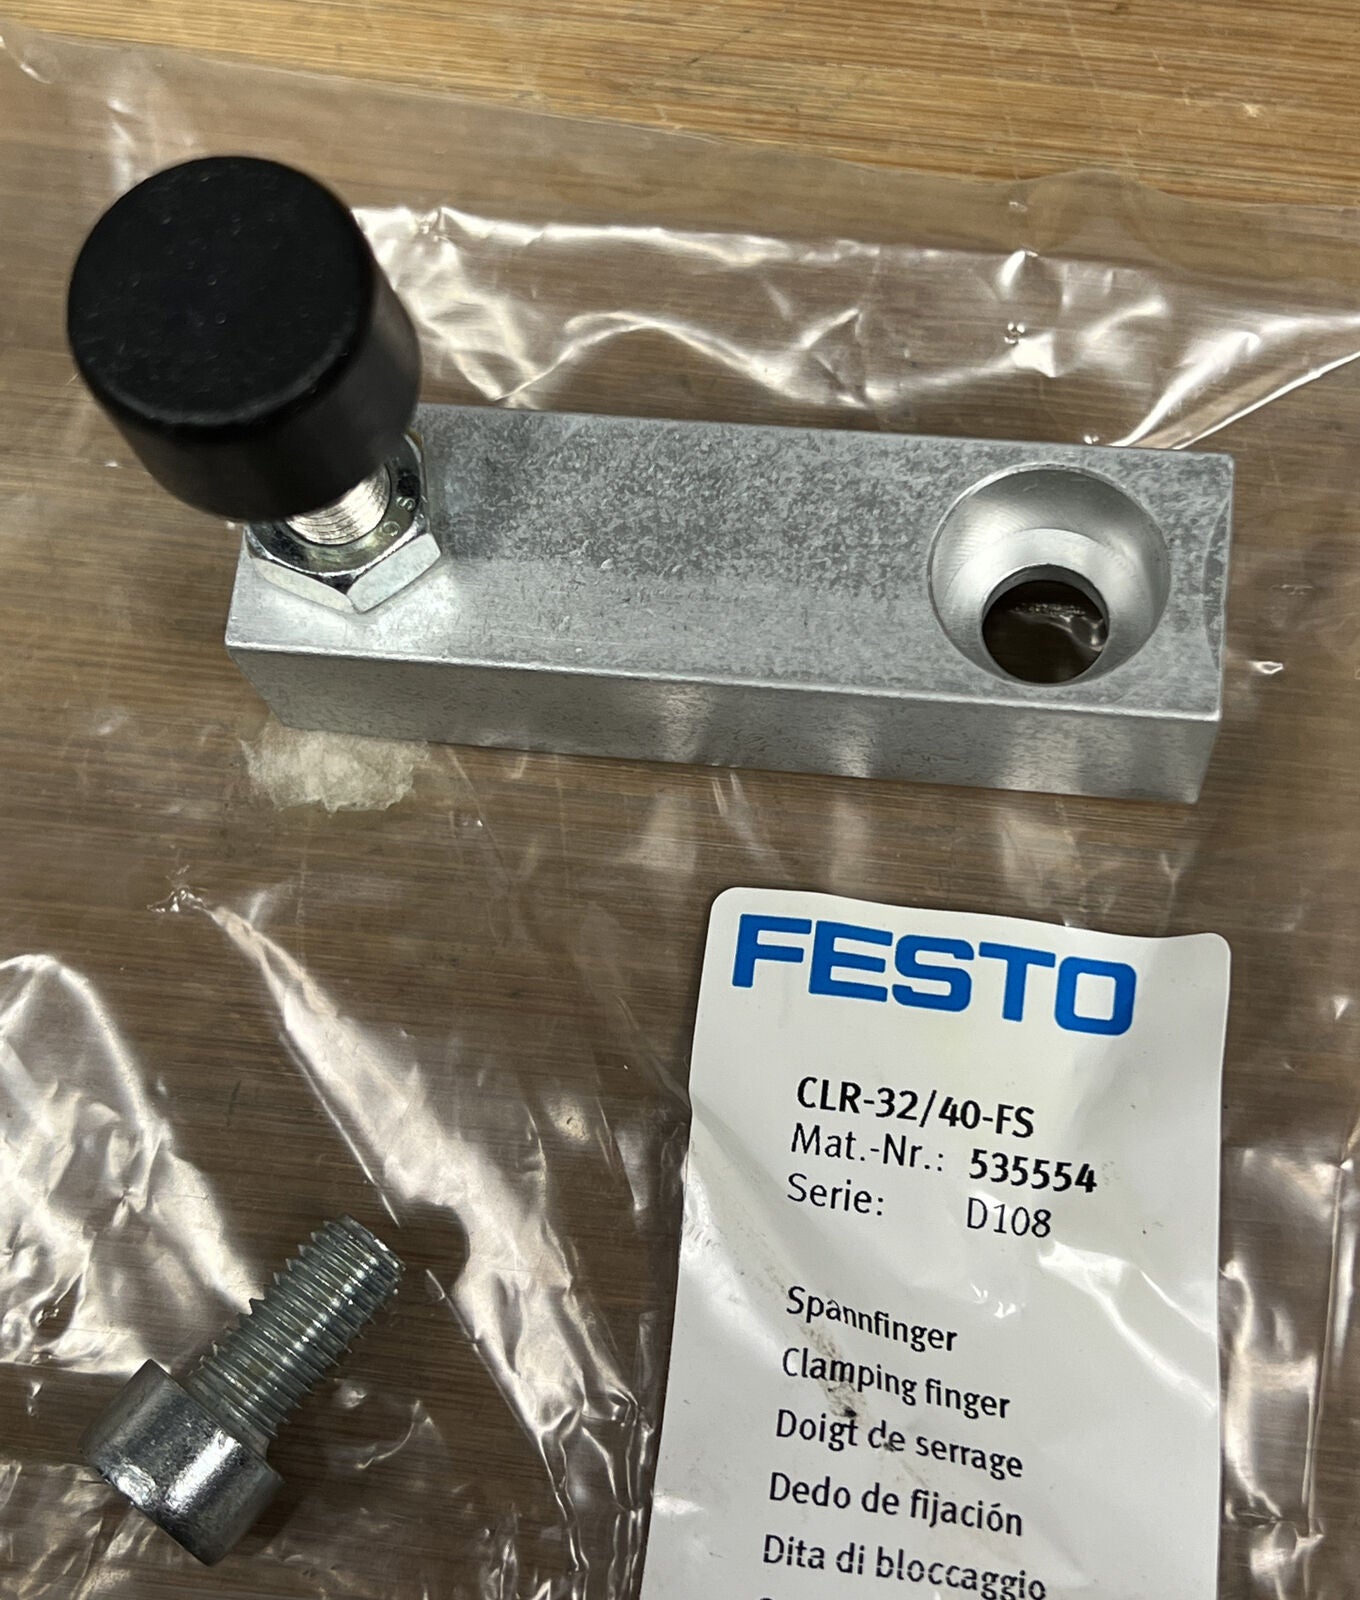 Festo CLR-32/40-FS / 535554 New Clamping Finger (YE100) - 0